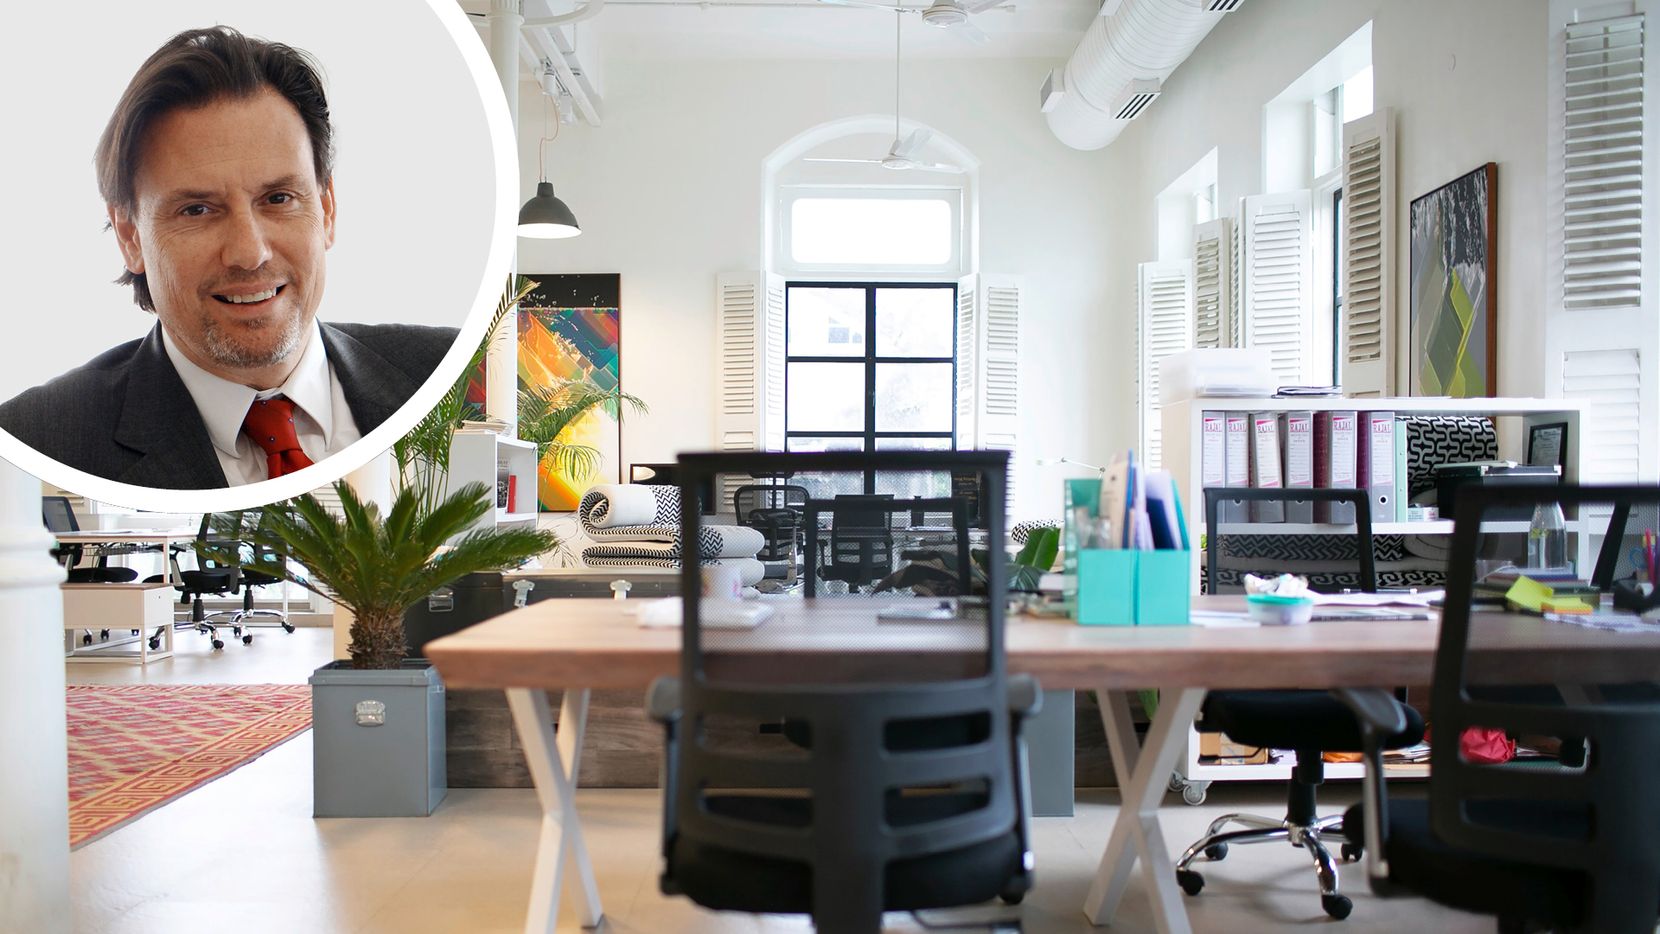 Ein modern eingerichtetes, lichtdurchflutetes und hohes Büro mit angenehmen Farben und Pflanzen. Oben links in einem kreisrunden Rahmen das Portrait von Marcel Schulte.